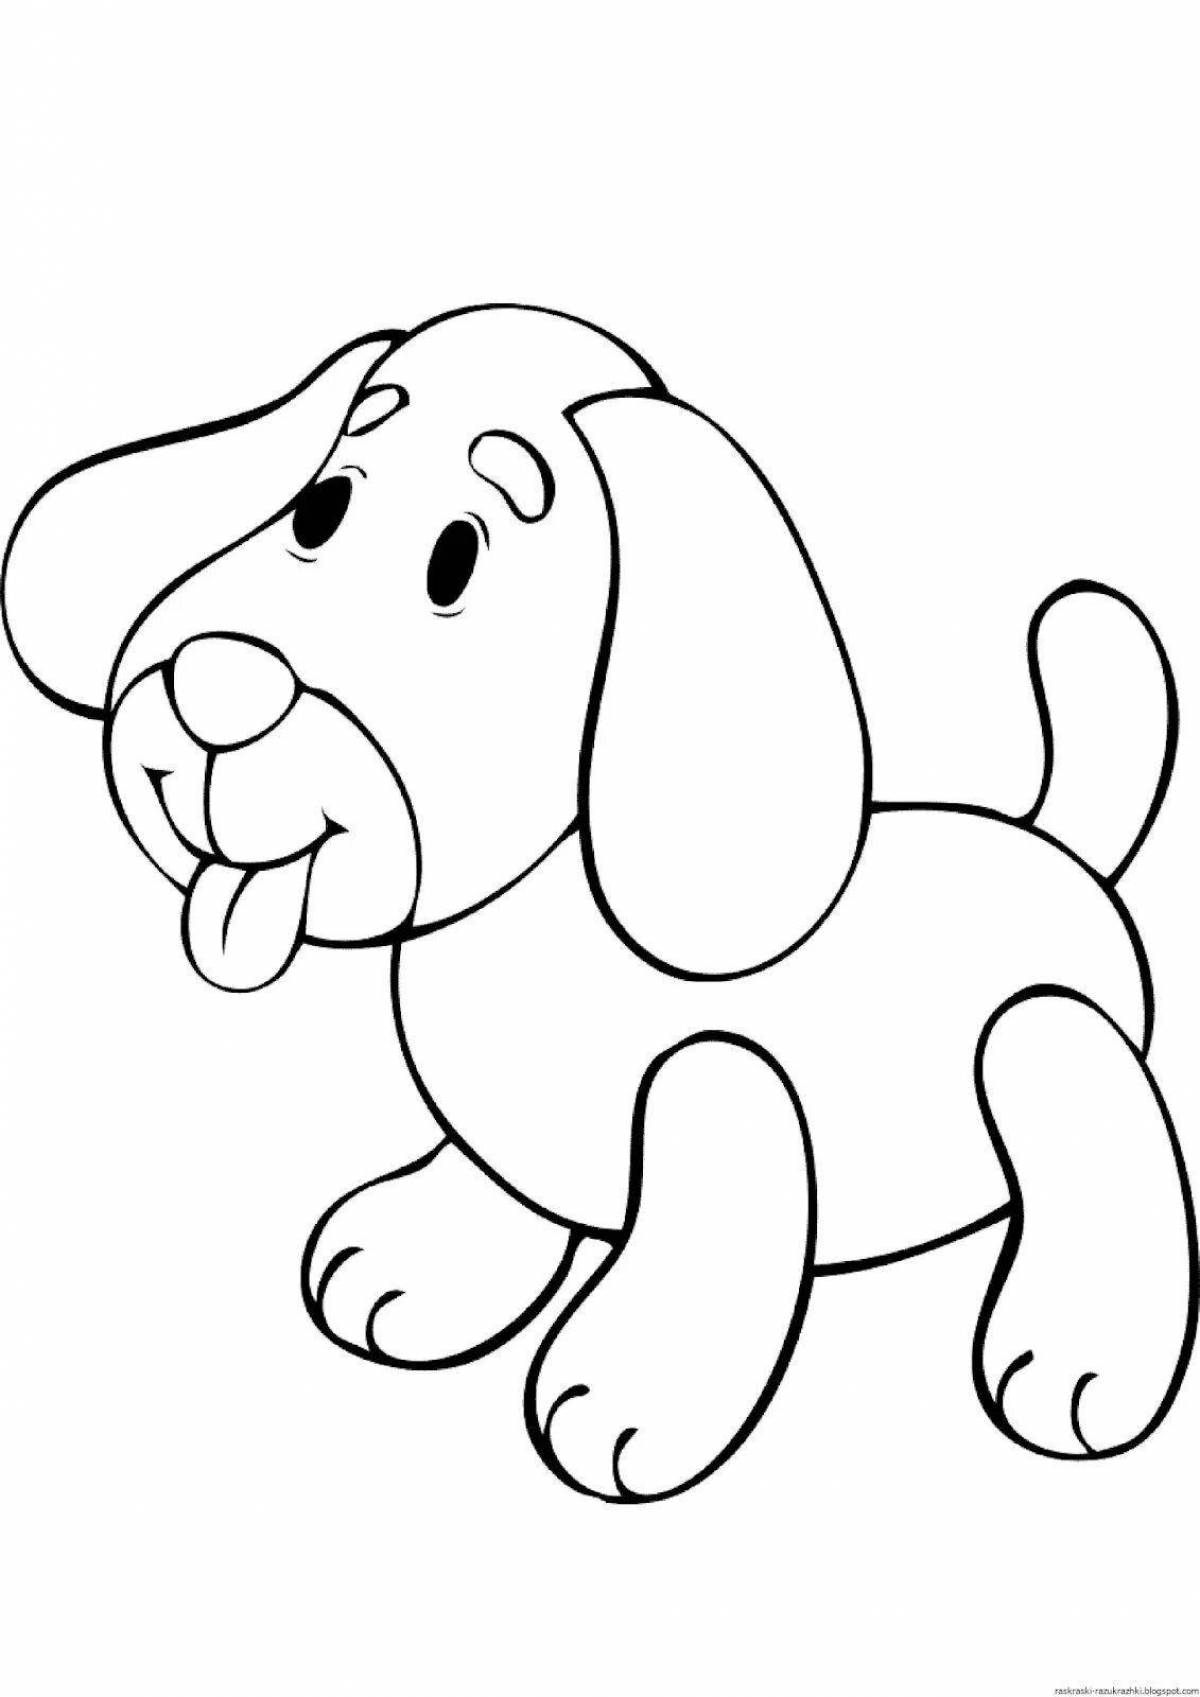 Яркая раскраска собака для детей 2-3 лет